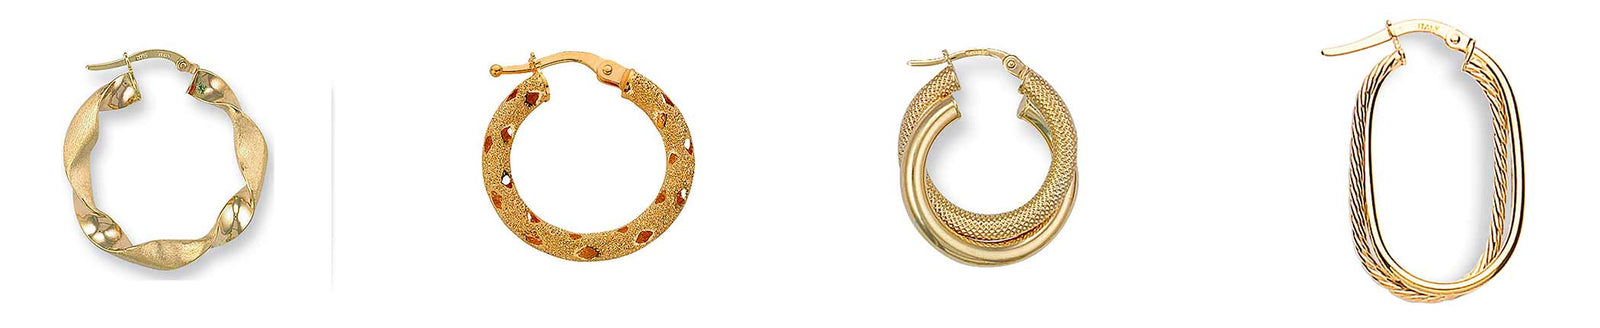 Geometric Chain Earrings Backs for Studs Women Hoops Fashion Jewelry  Pendant Trendy Miss 